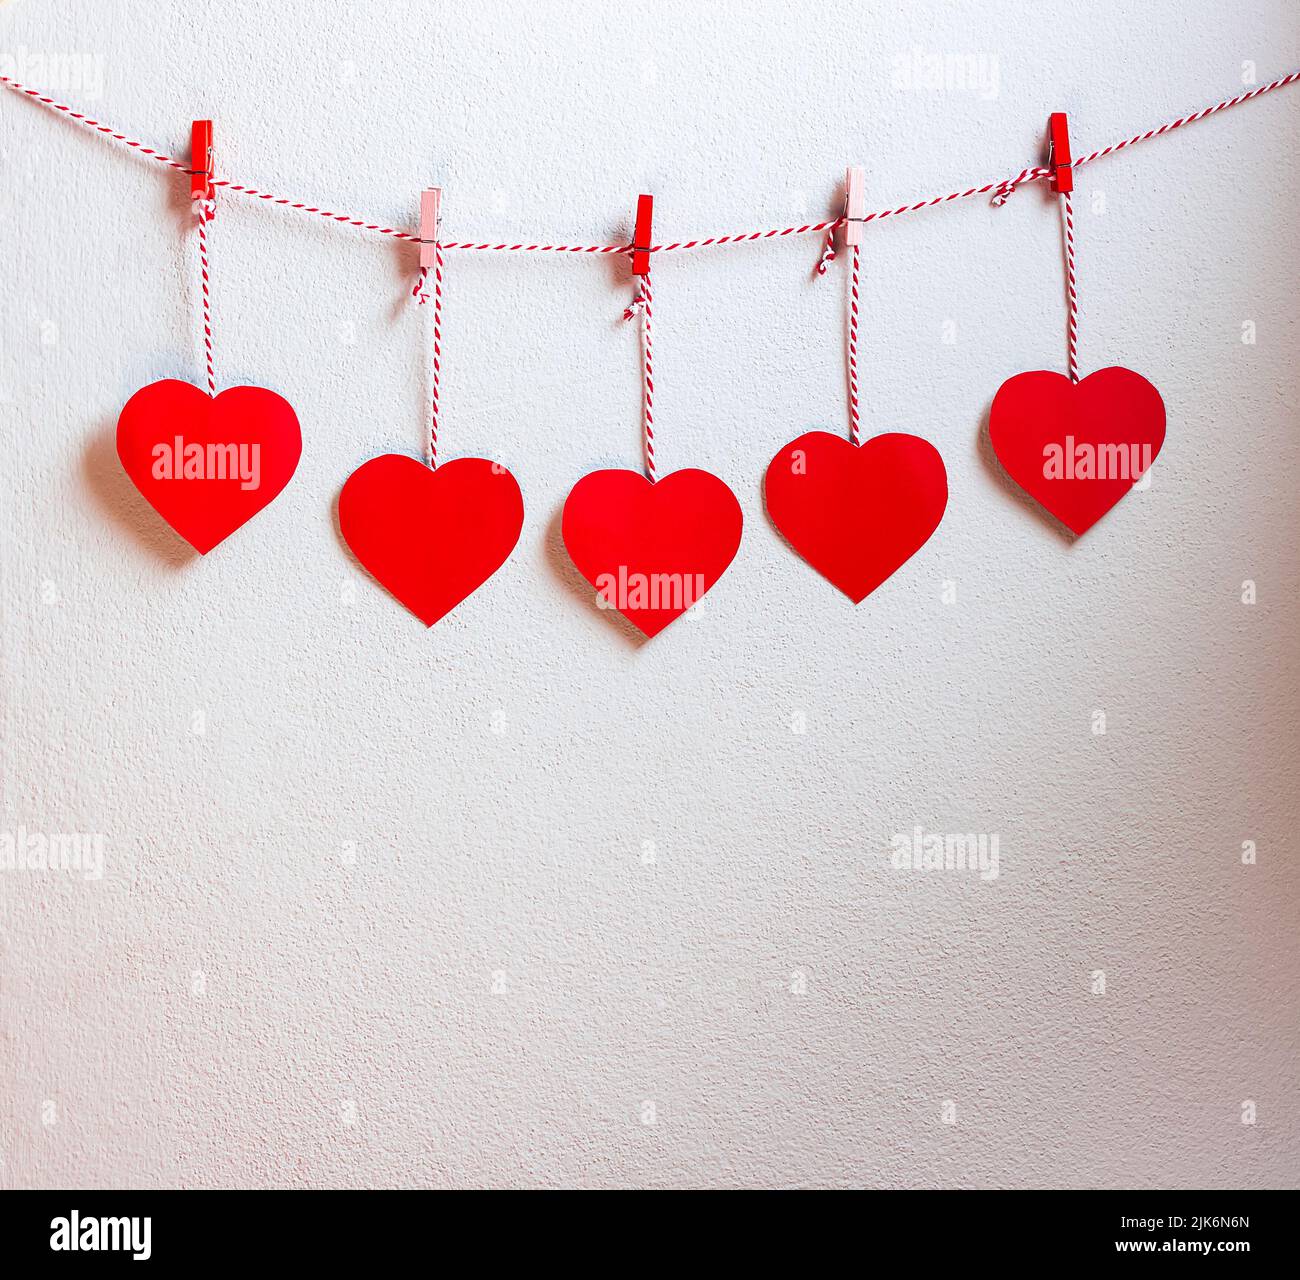 Rotes Herz Papier geschnitten mit natürlicher Kordel und roten Clips an der Wand hängen, Kopierraum, Valentinstag - Bild Stockfoto